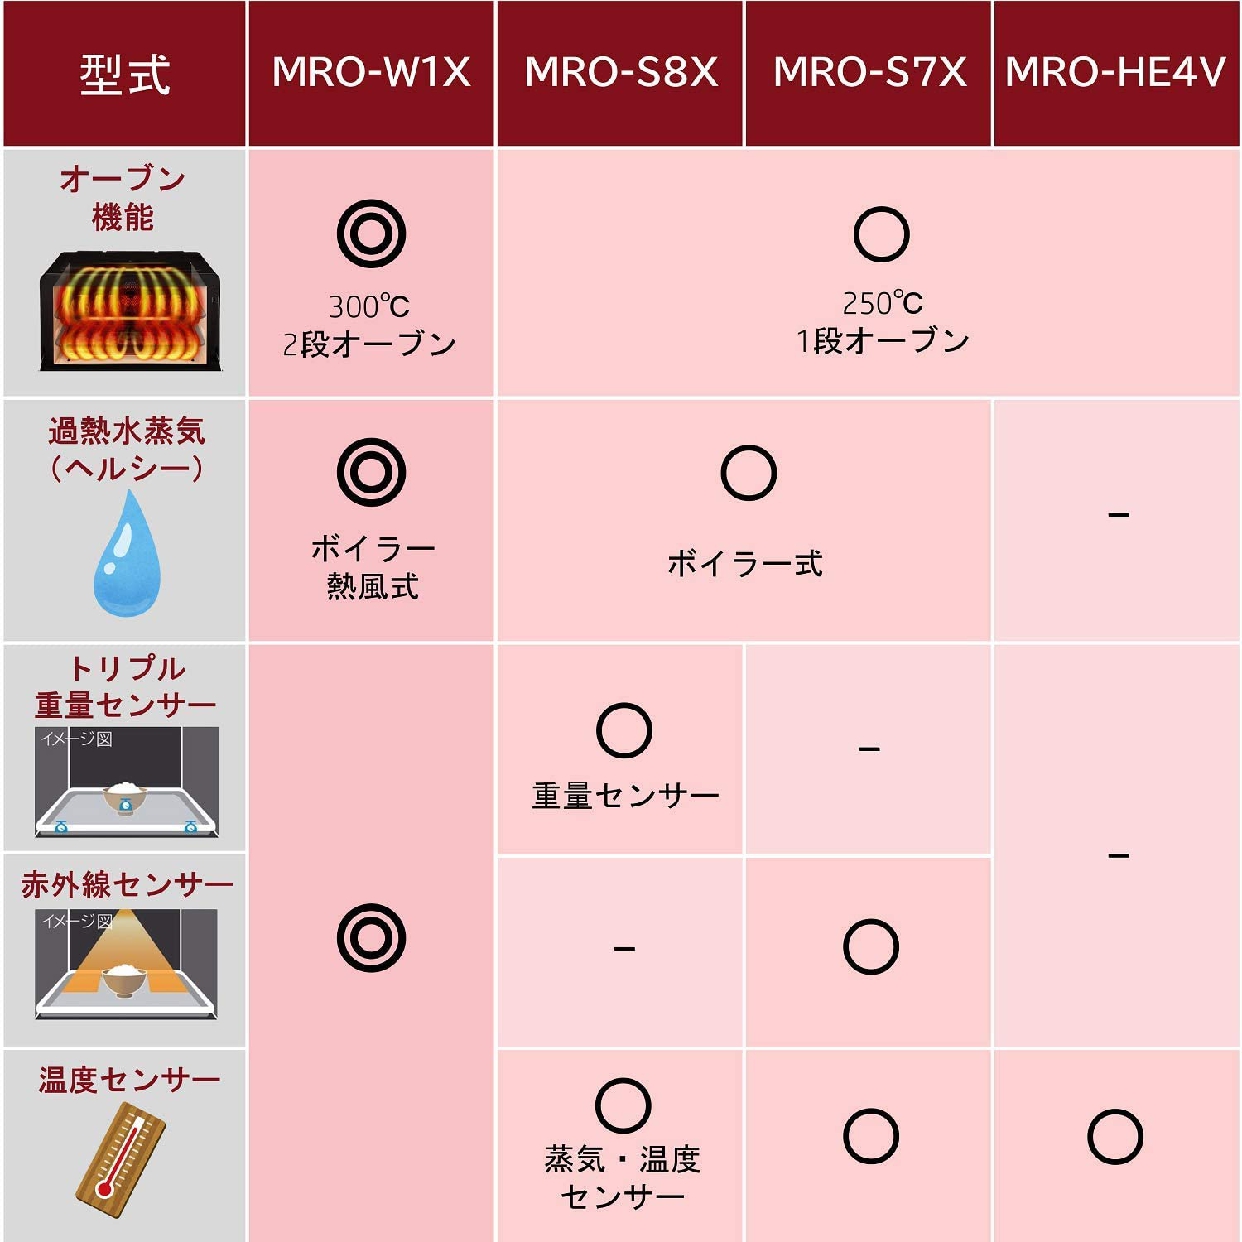 日立(HITACHI) ヘルシーシェフ MRO-S7Xの商品画像2 